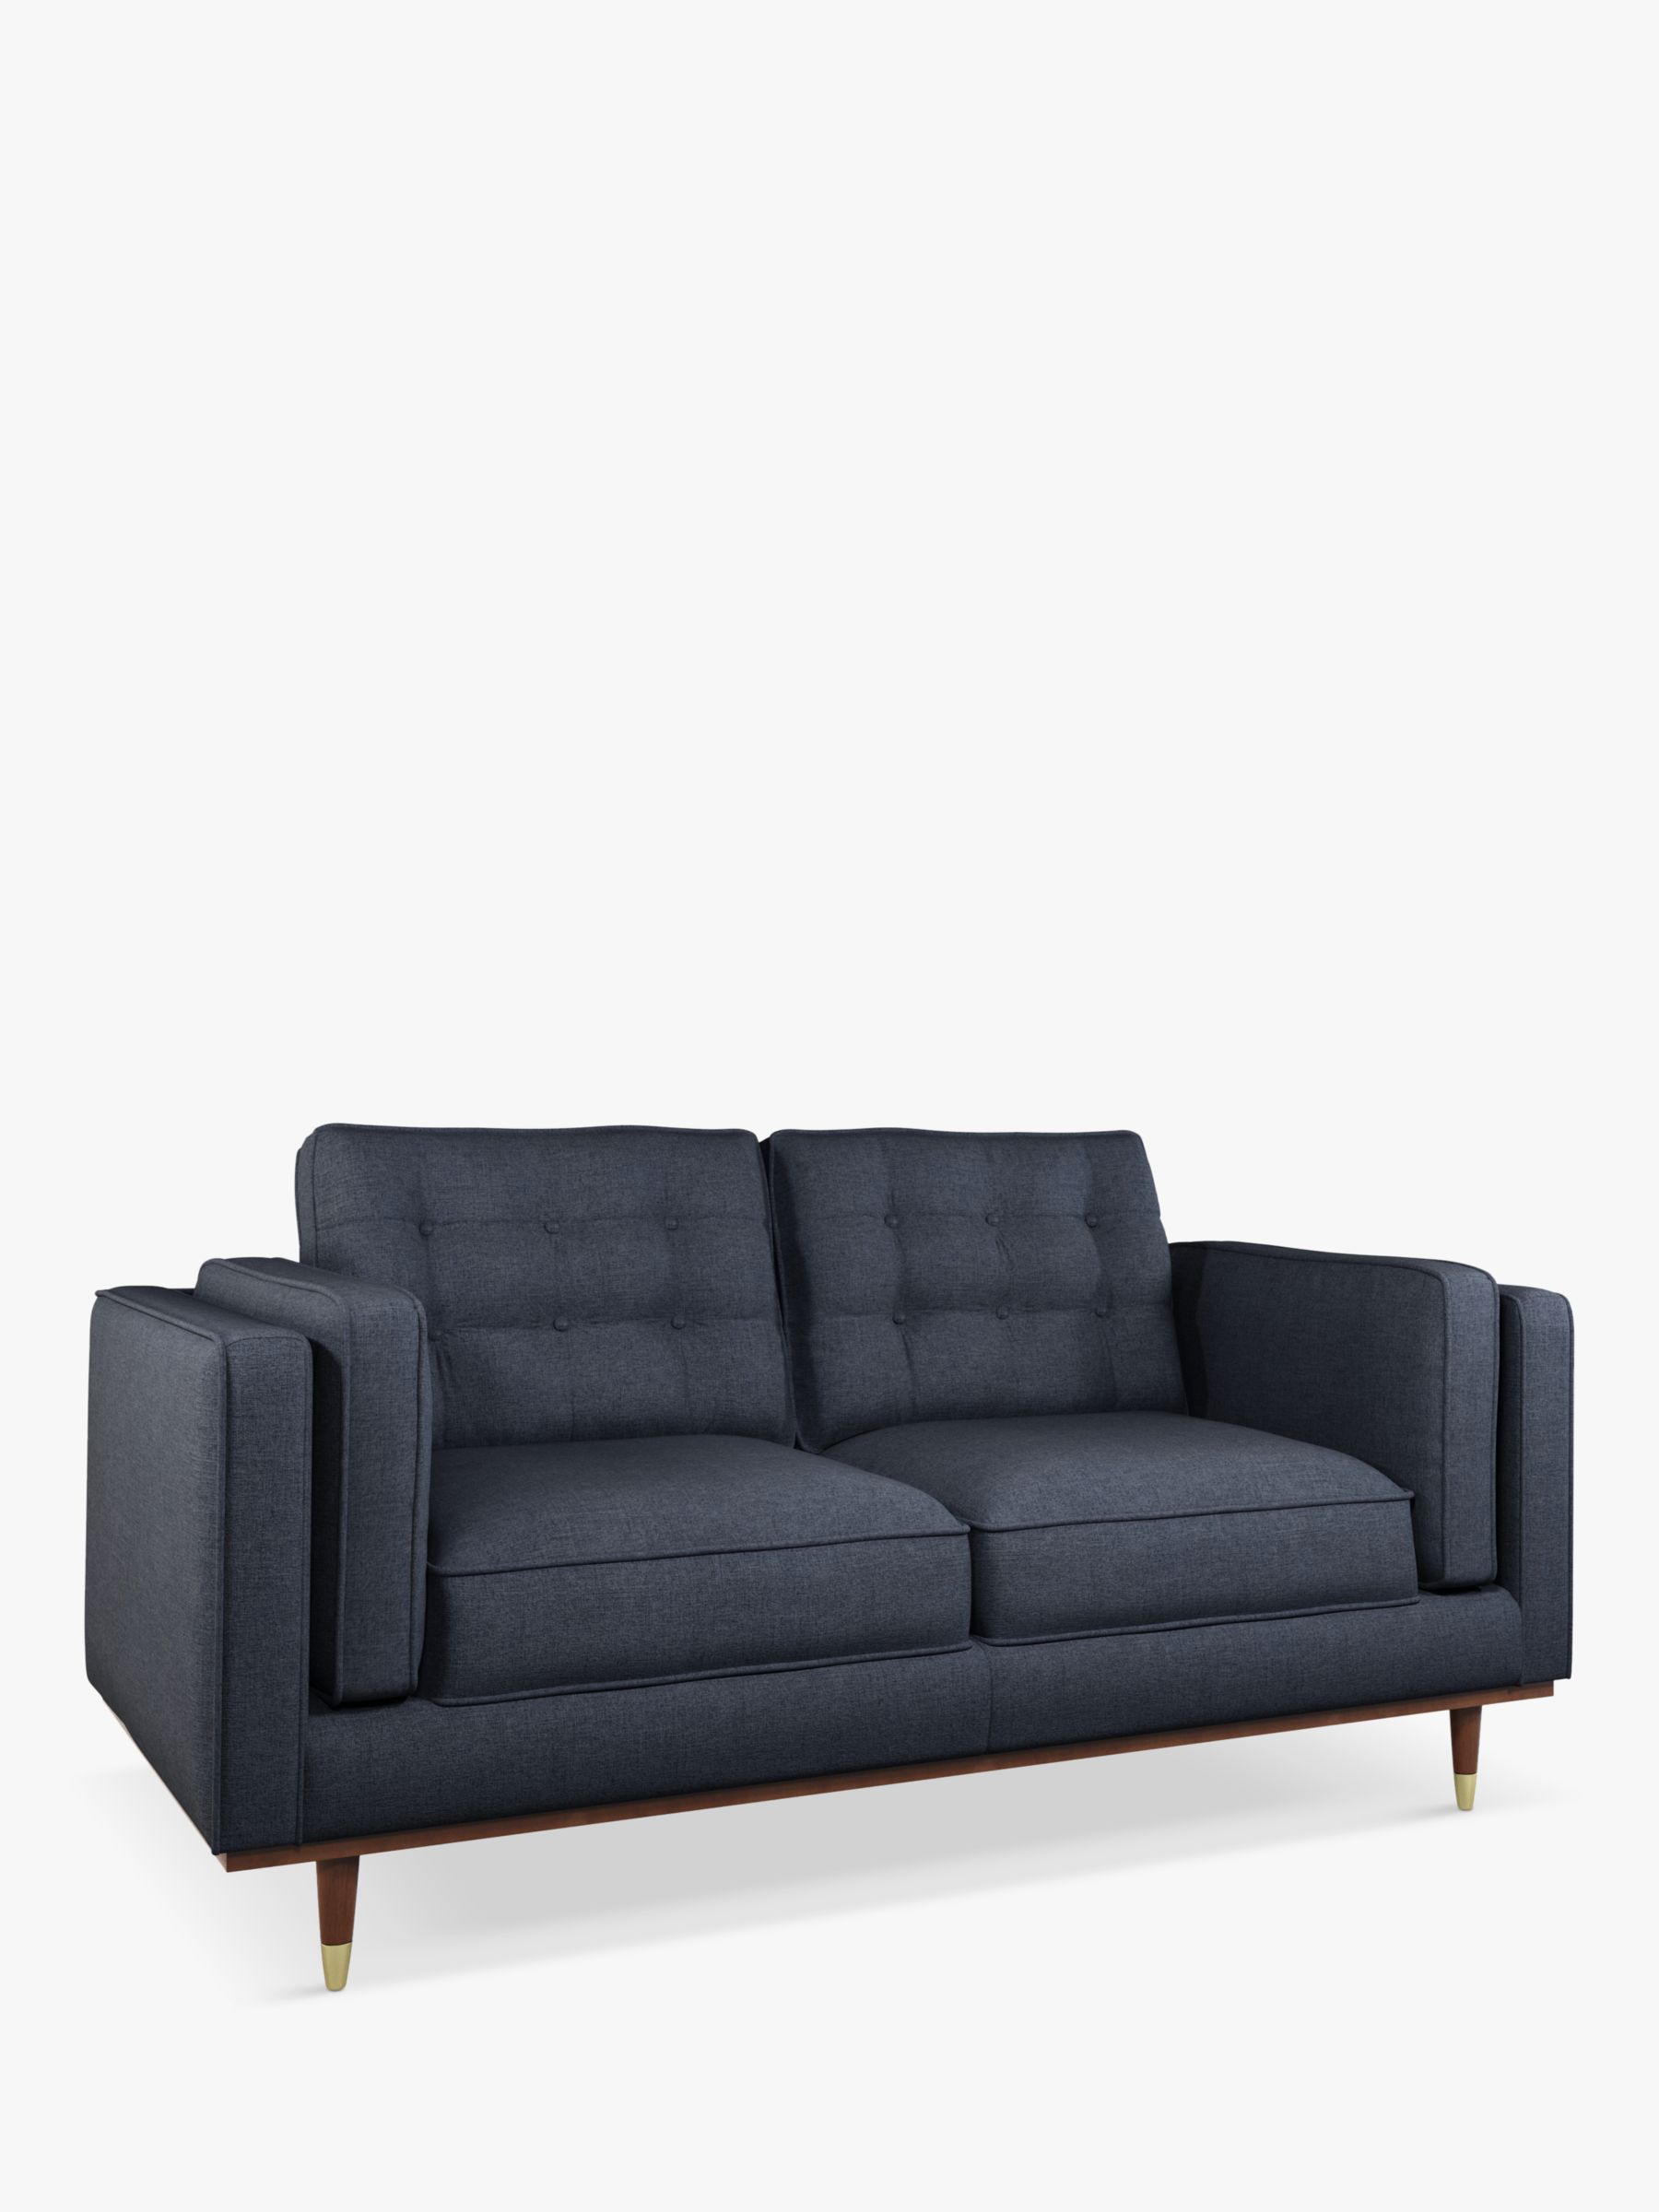 Lyon Range, John Lewis + Swoon Lyon Medium 2 Seater Sofa, Dark Leg, Denim Weave